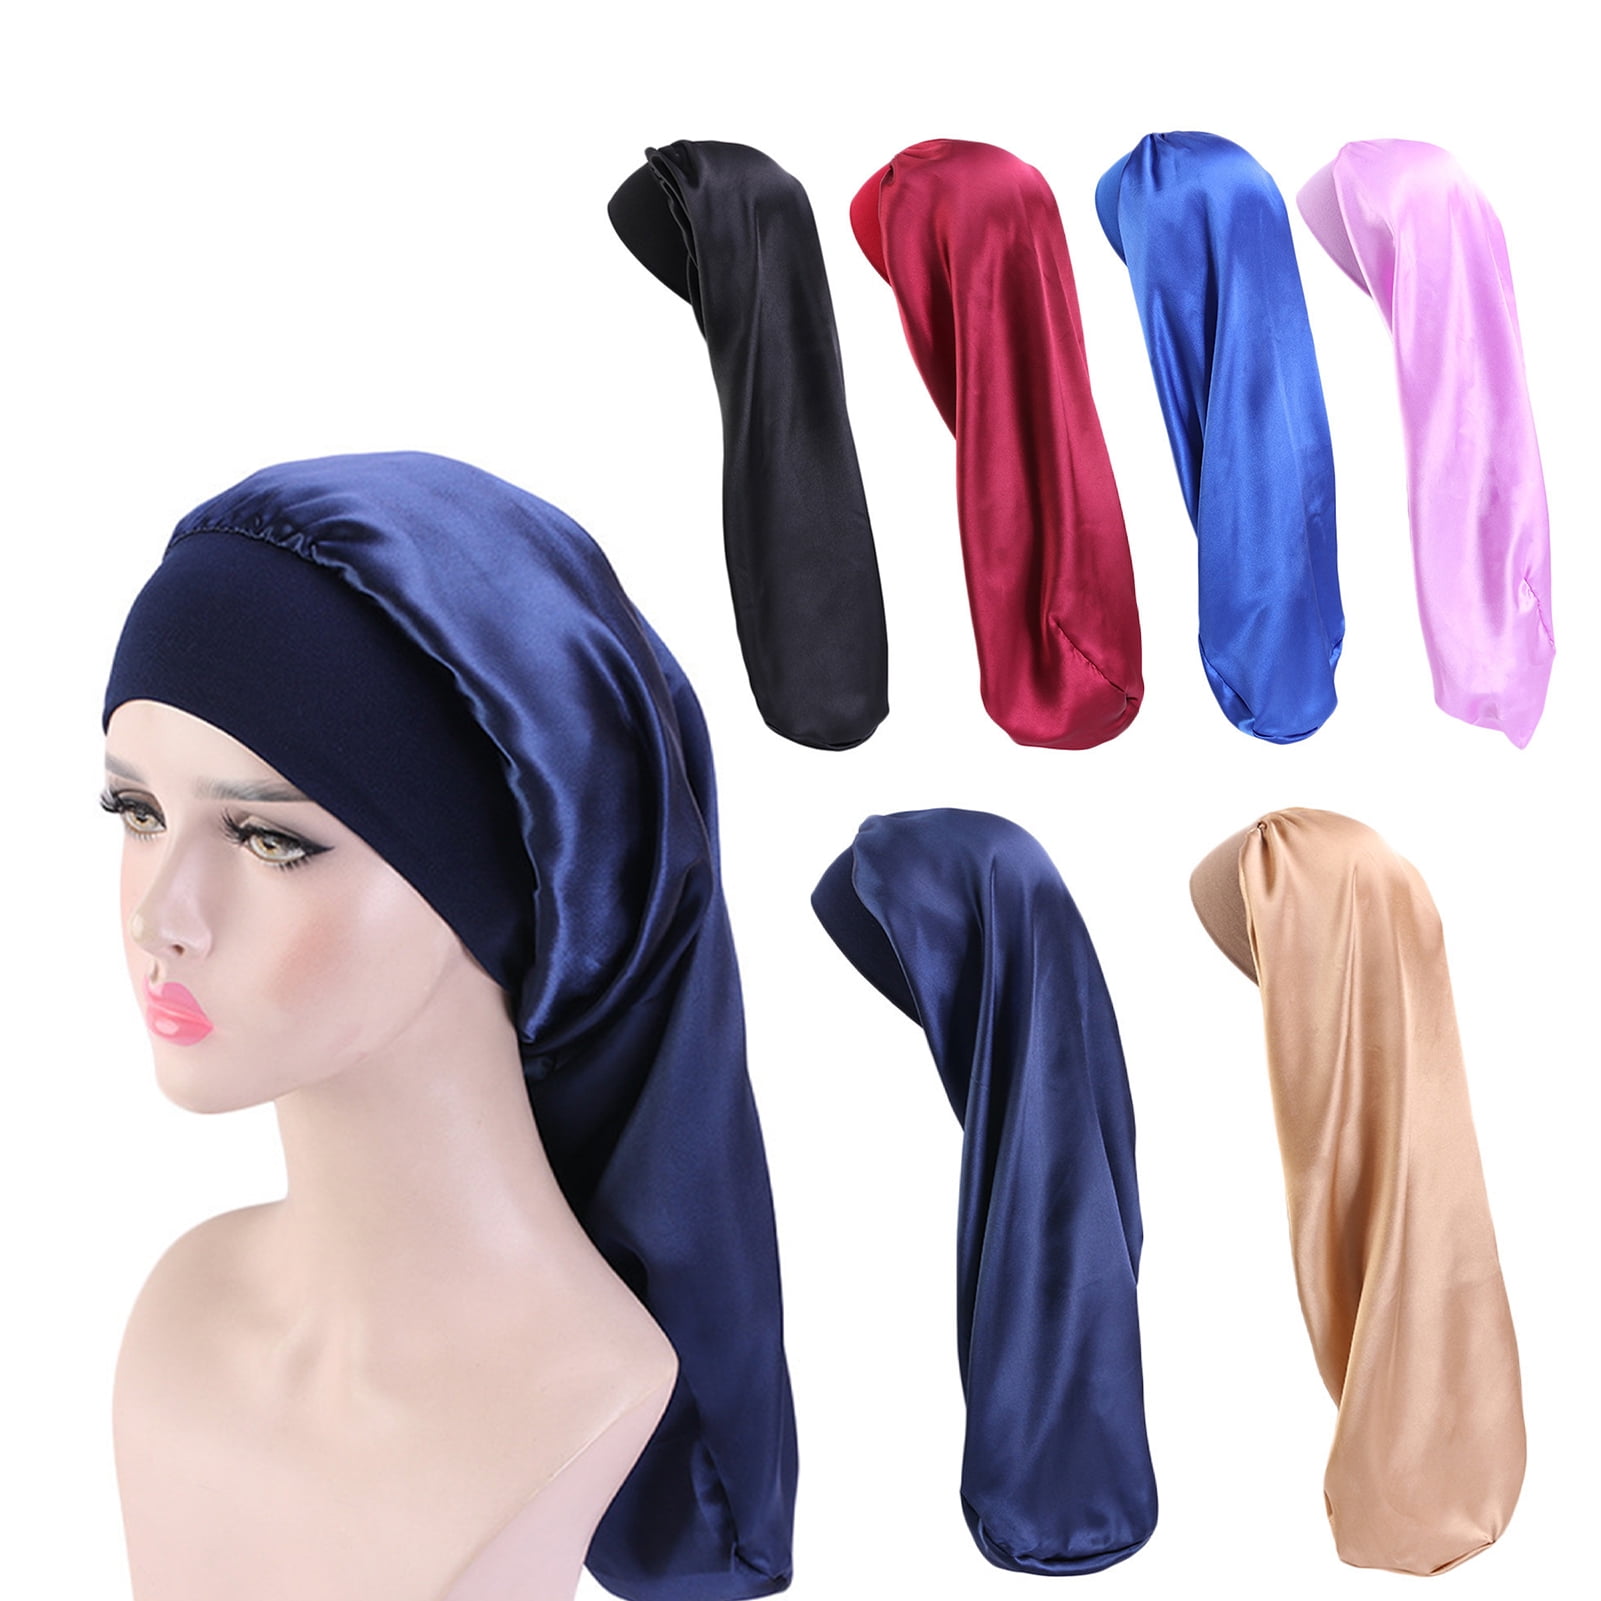 Ybeauty Hair Bonnet Wide Pure Color Imitation Silk Women Shower Hat for Hair Salon, Size: 66, Black